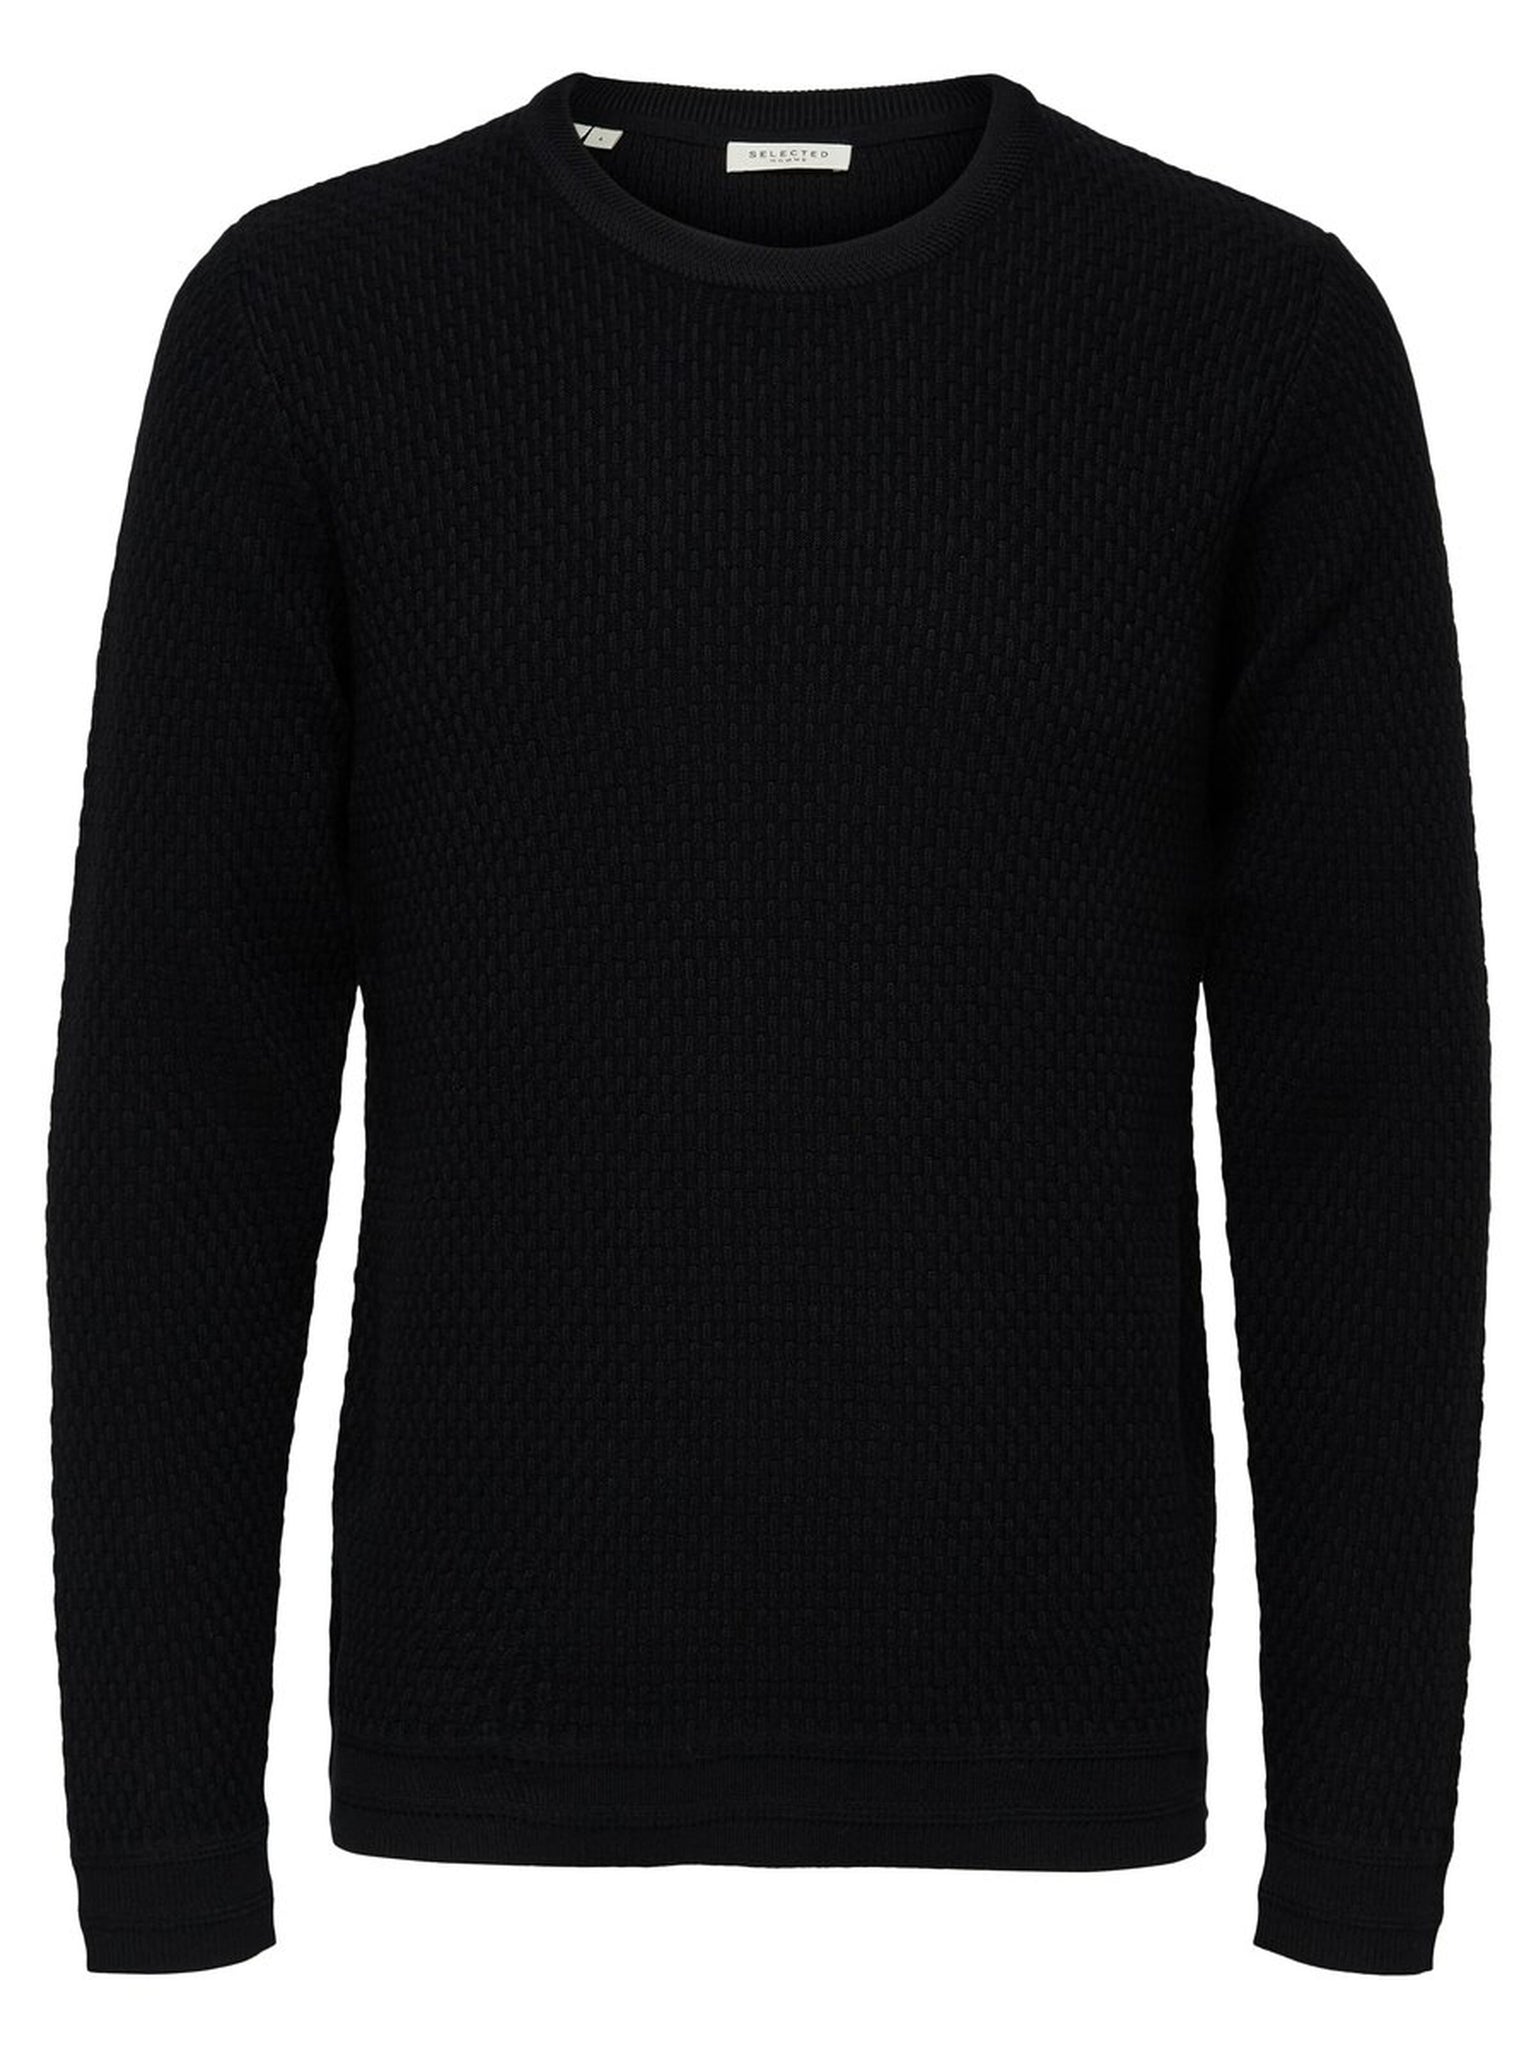 Pullover in cotone bio / Nero - Ideal Moda